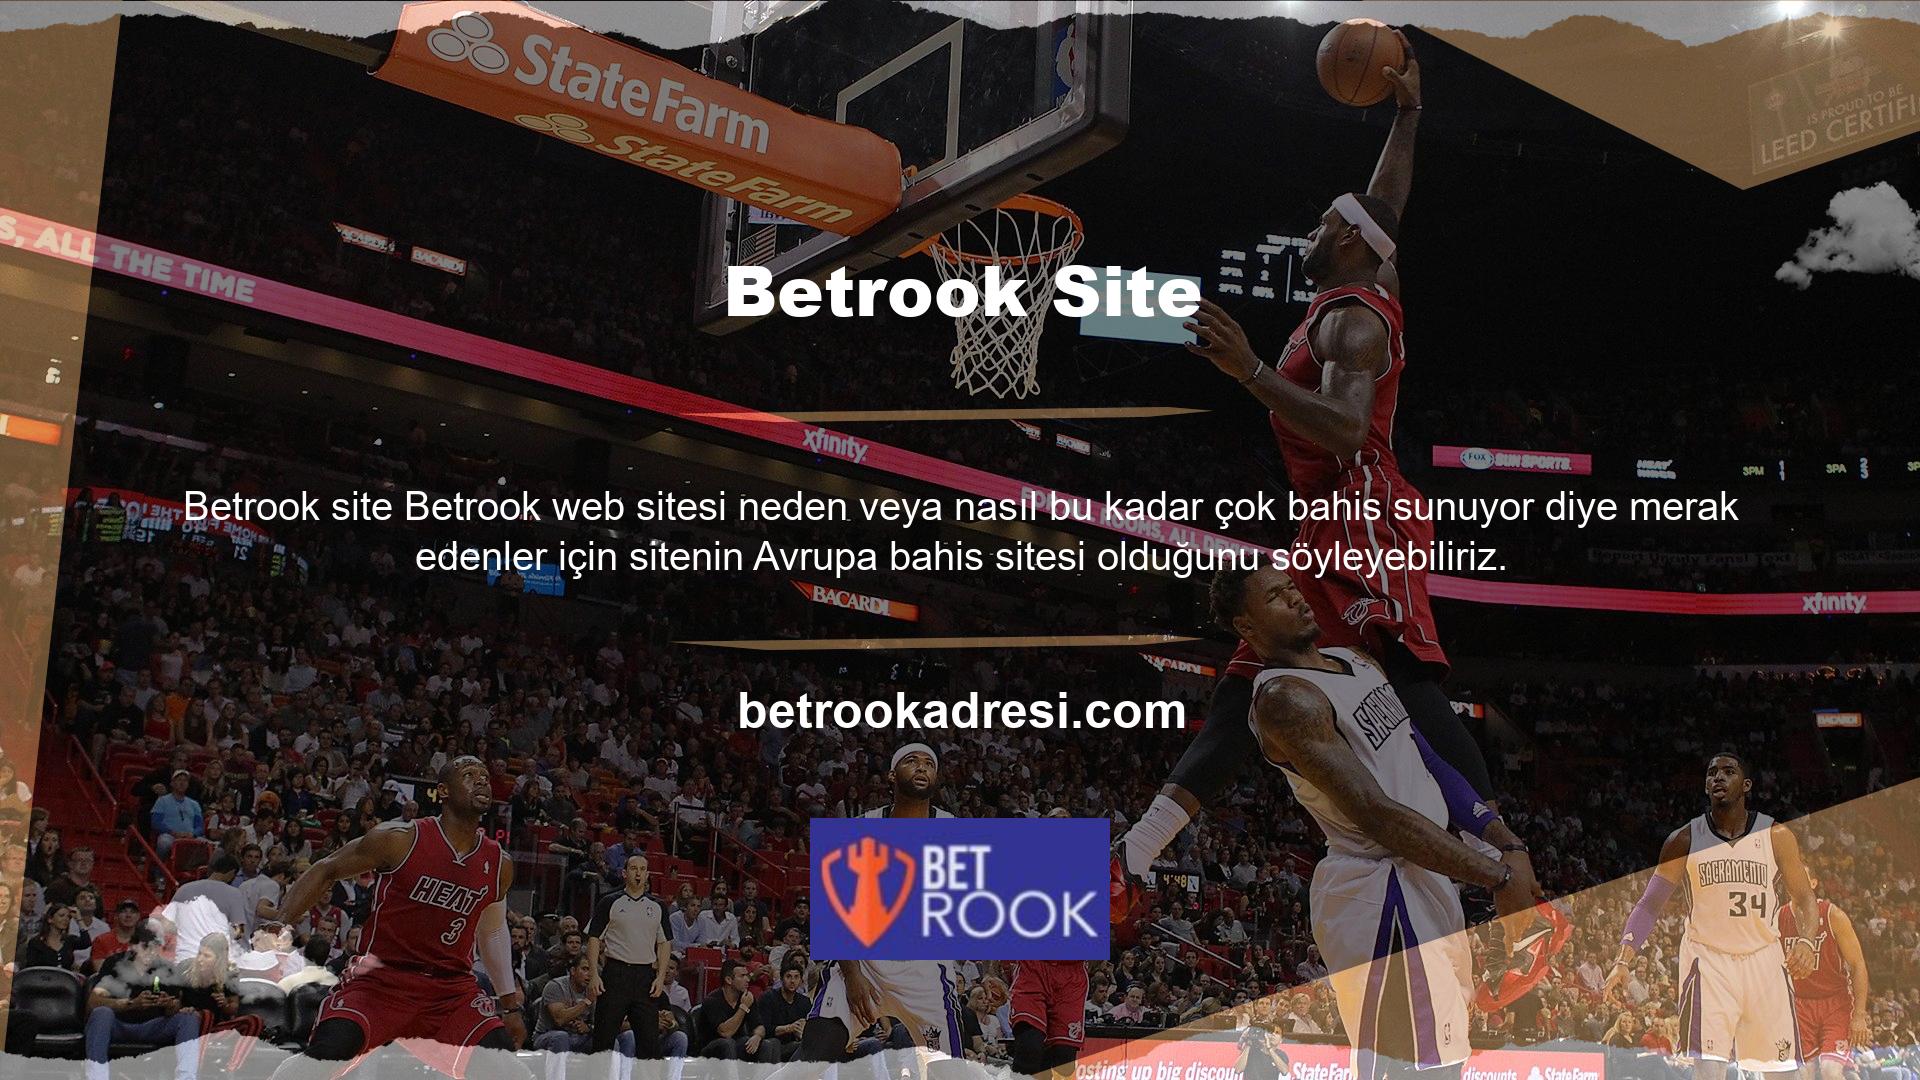 Betrook onlarca ülkeye hizmet veren bir sitedir ve finansal gücü Türk casino sektörüne hizmet veren casino sitelerinden kat kat fazladır